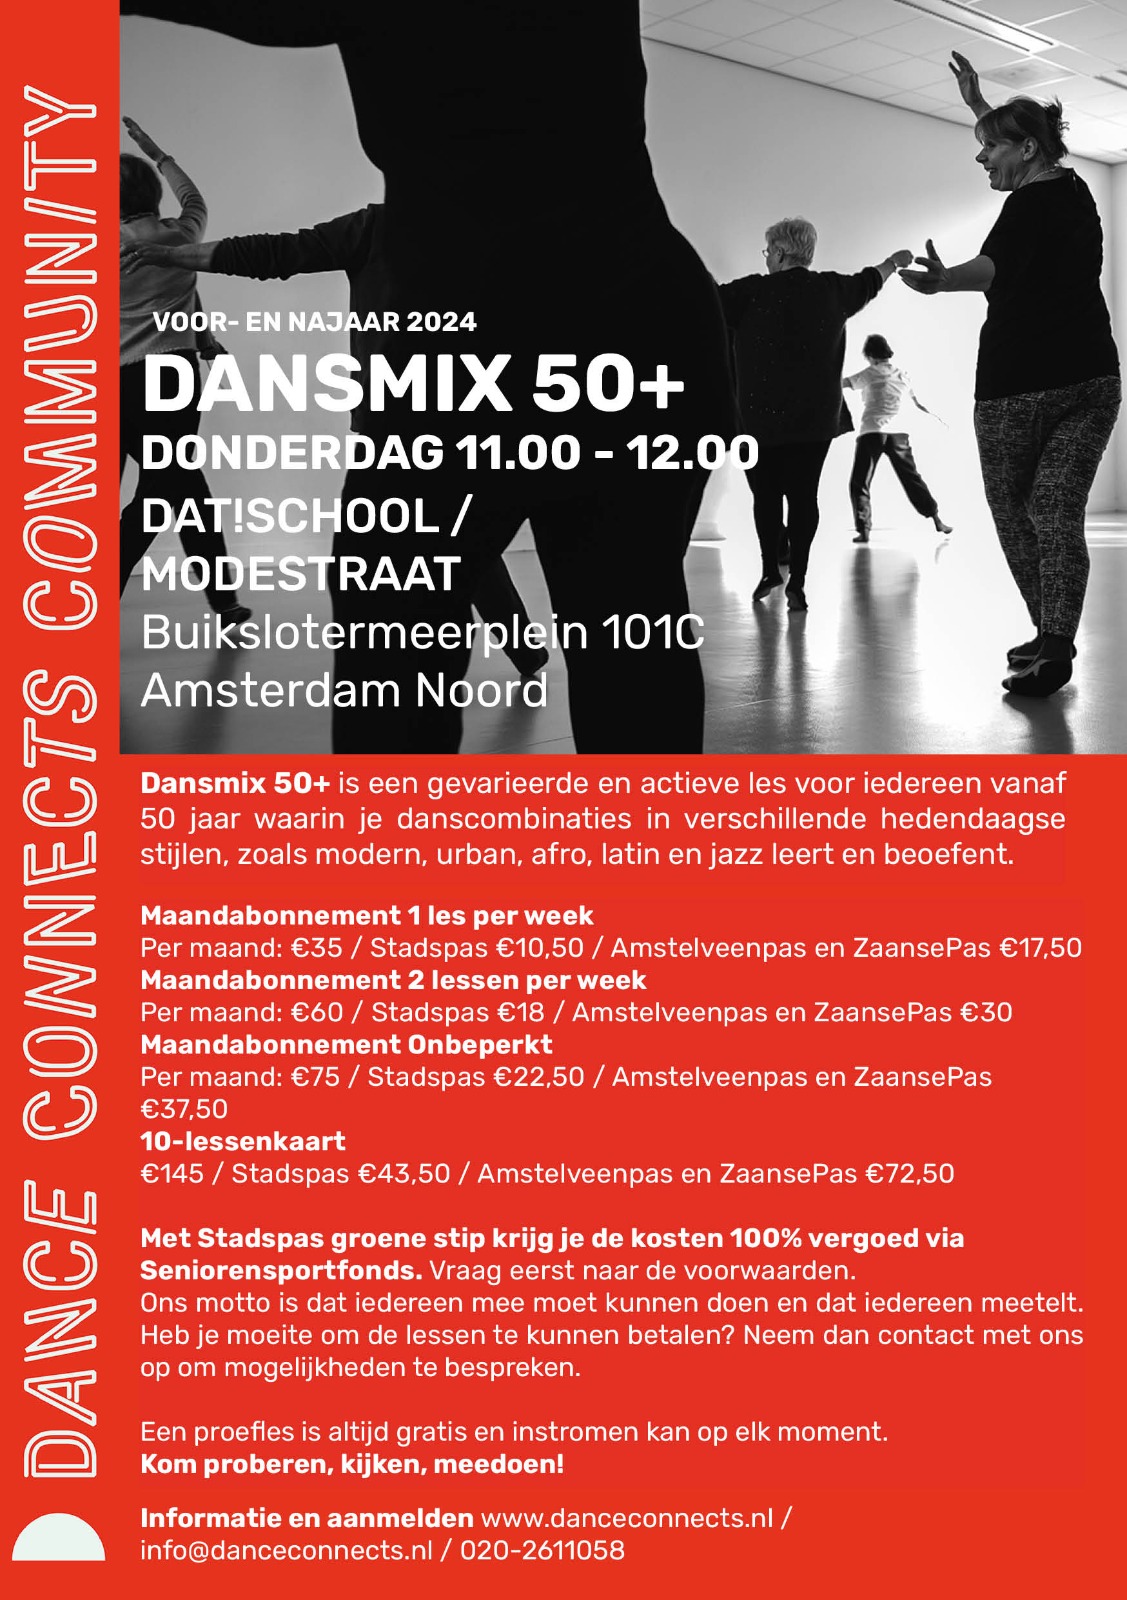 dance connects dansmix 50+